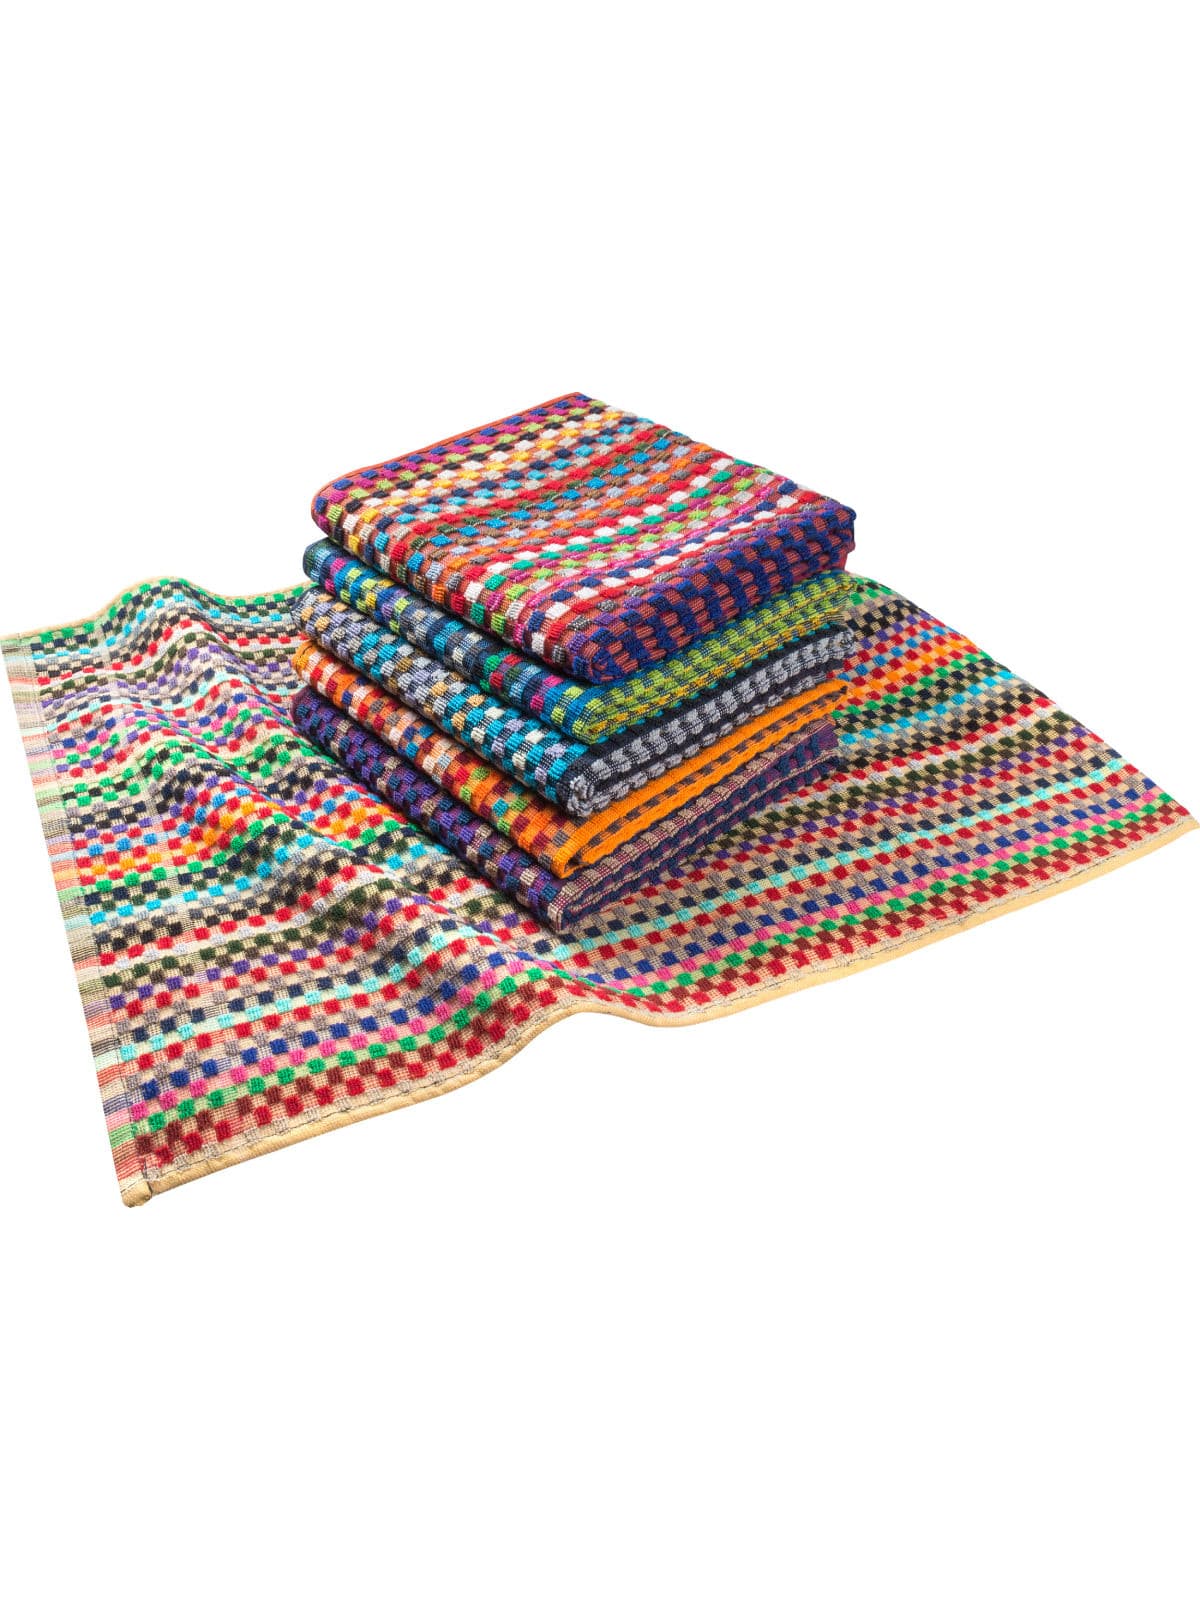 Pit Towel Multicolor - 12 Pcs by Kitchen & Table Linens -  ChefsCotton